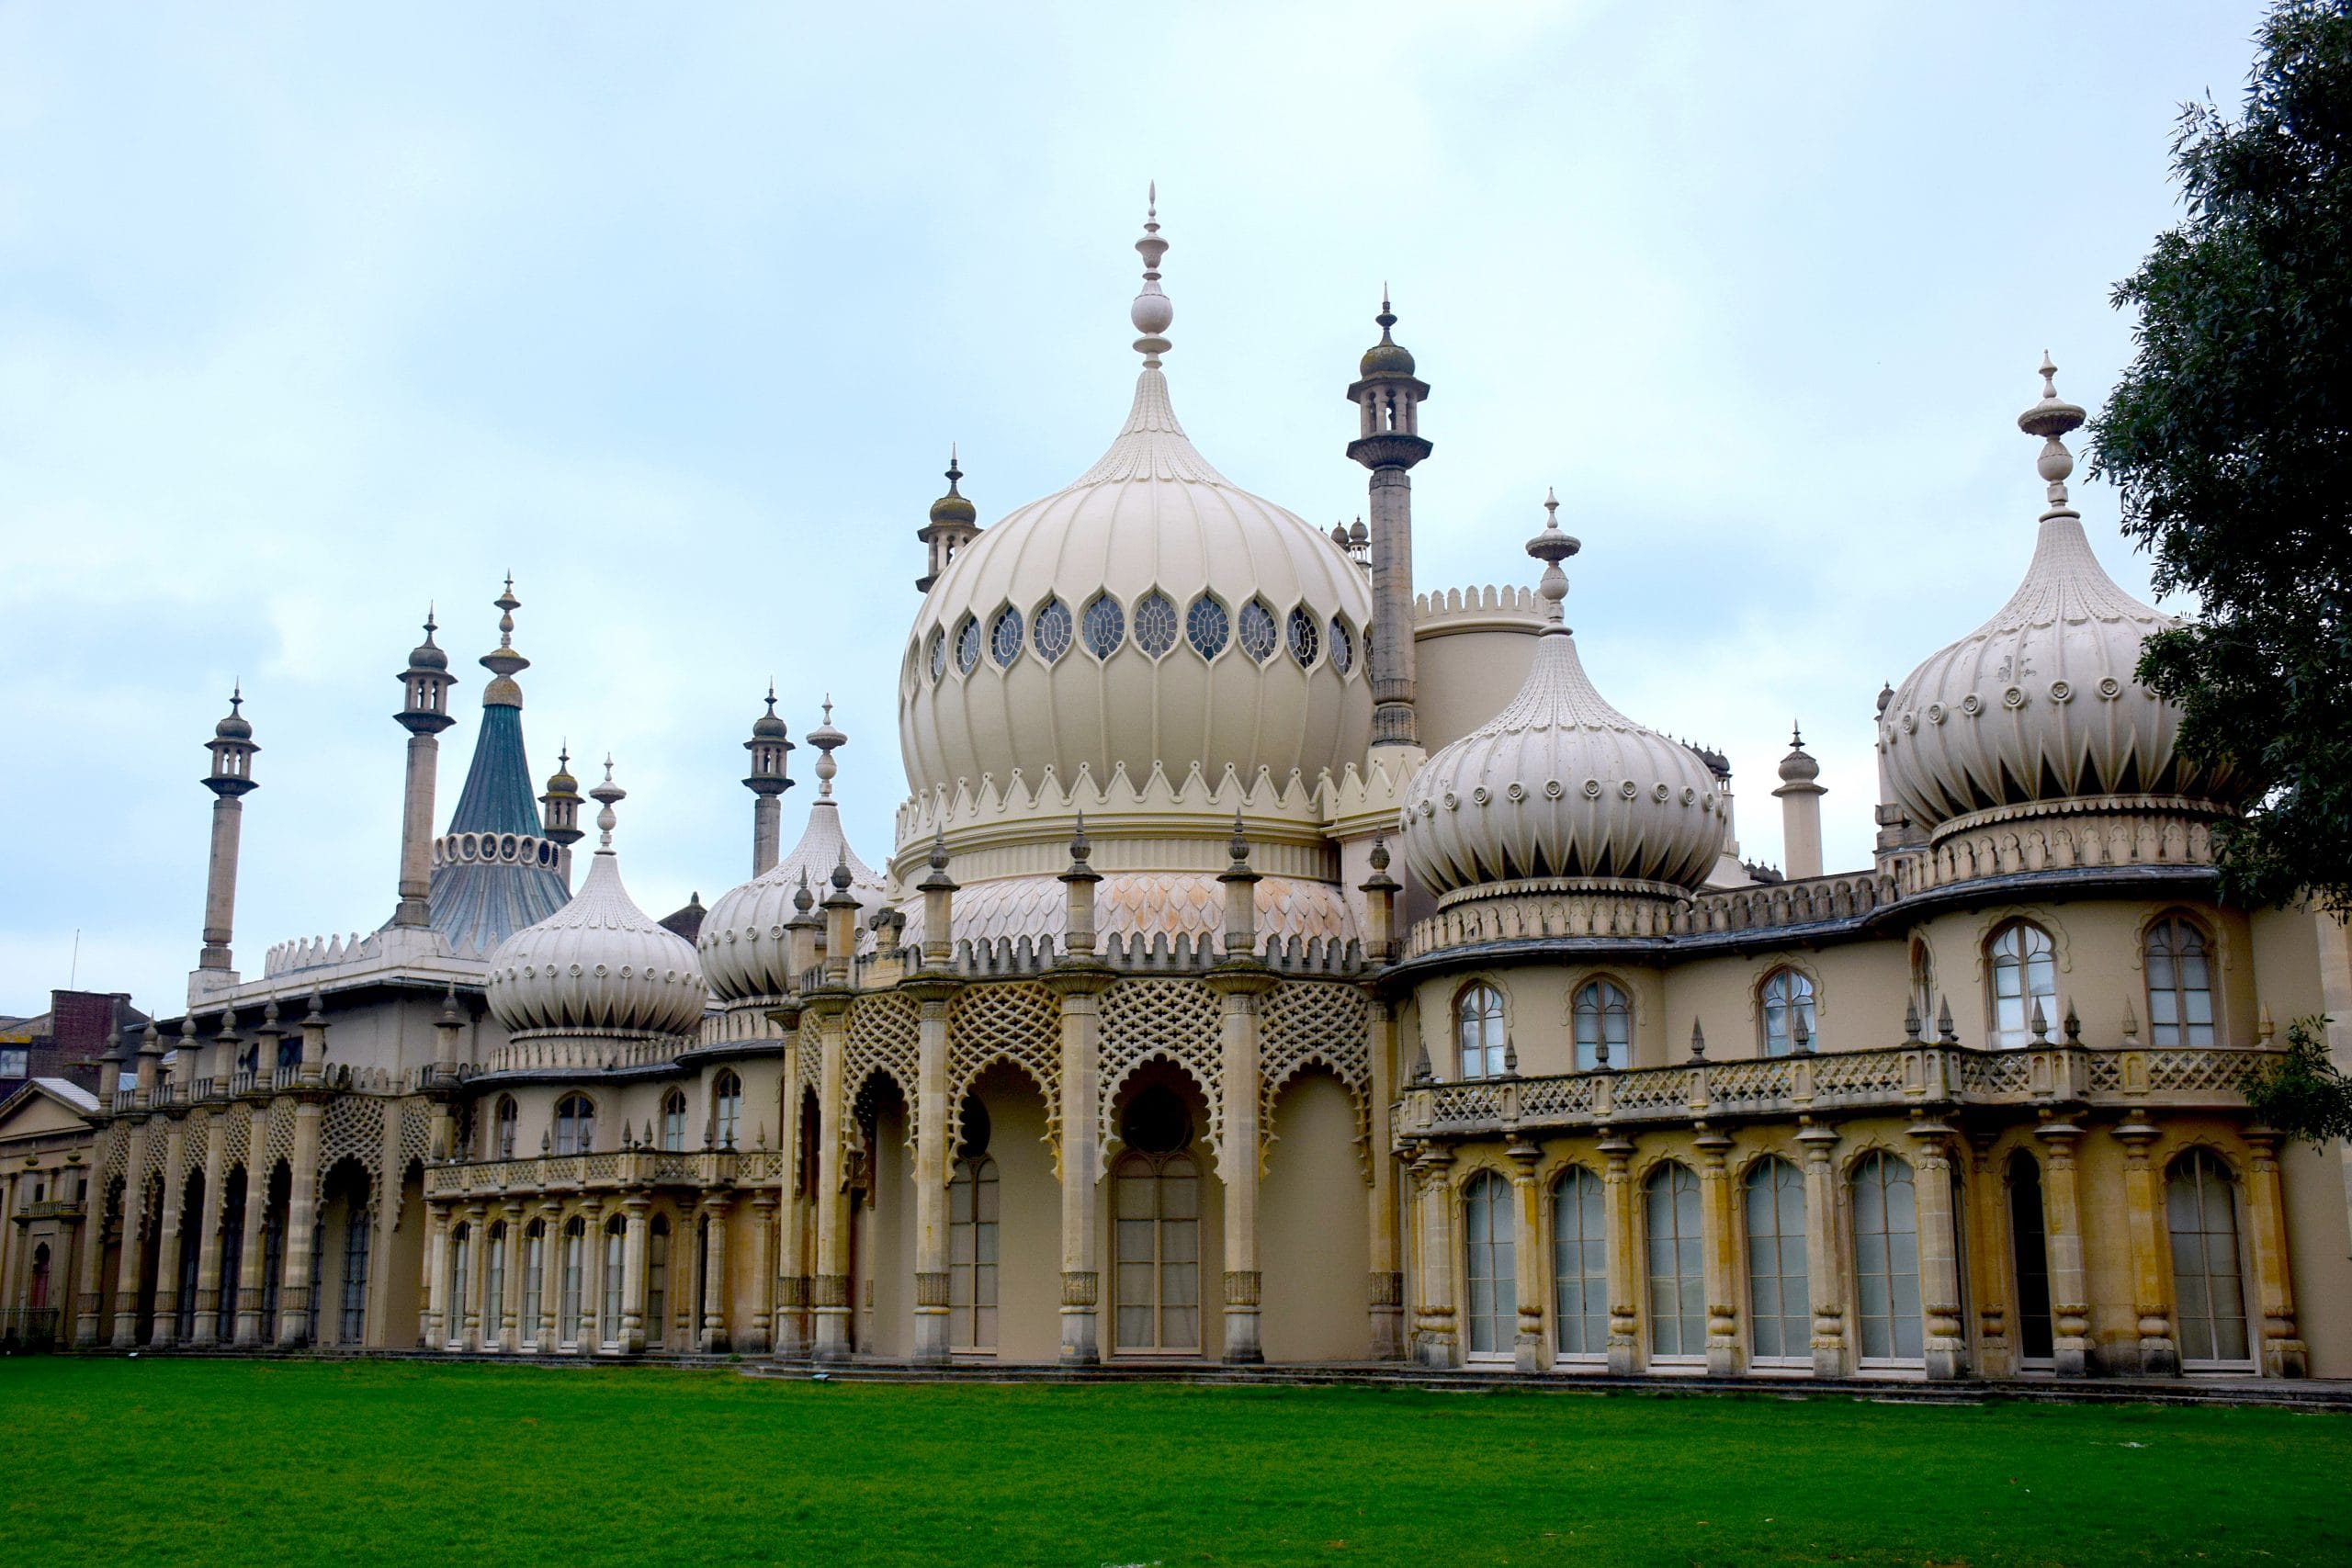 Brighton Palace